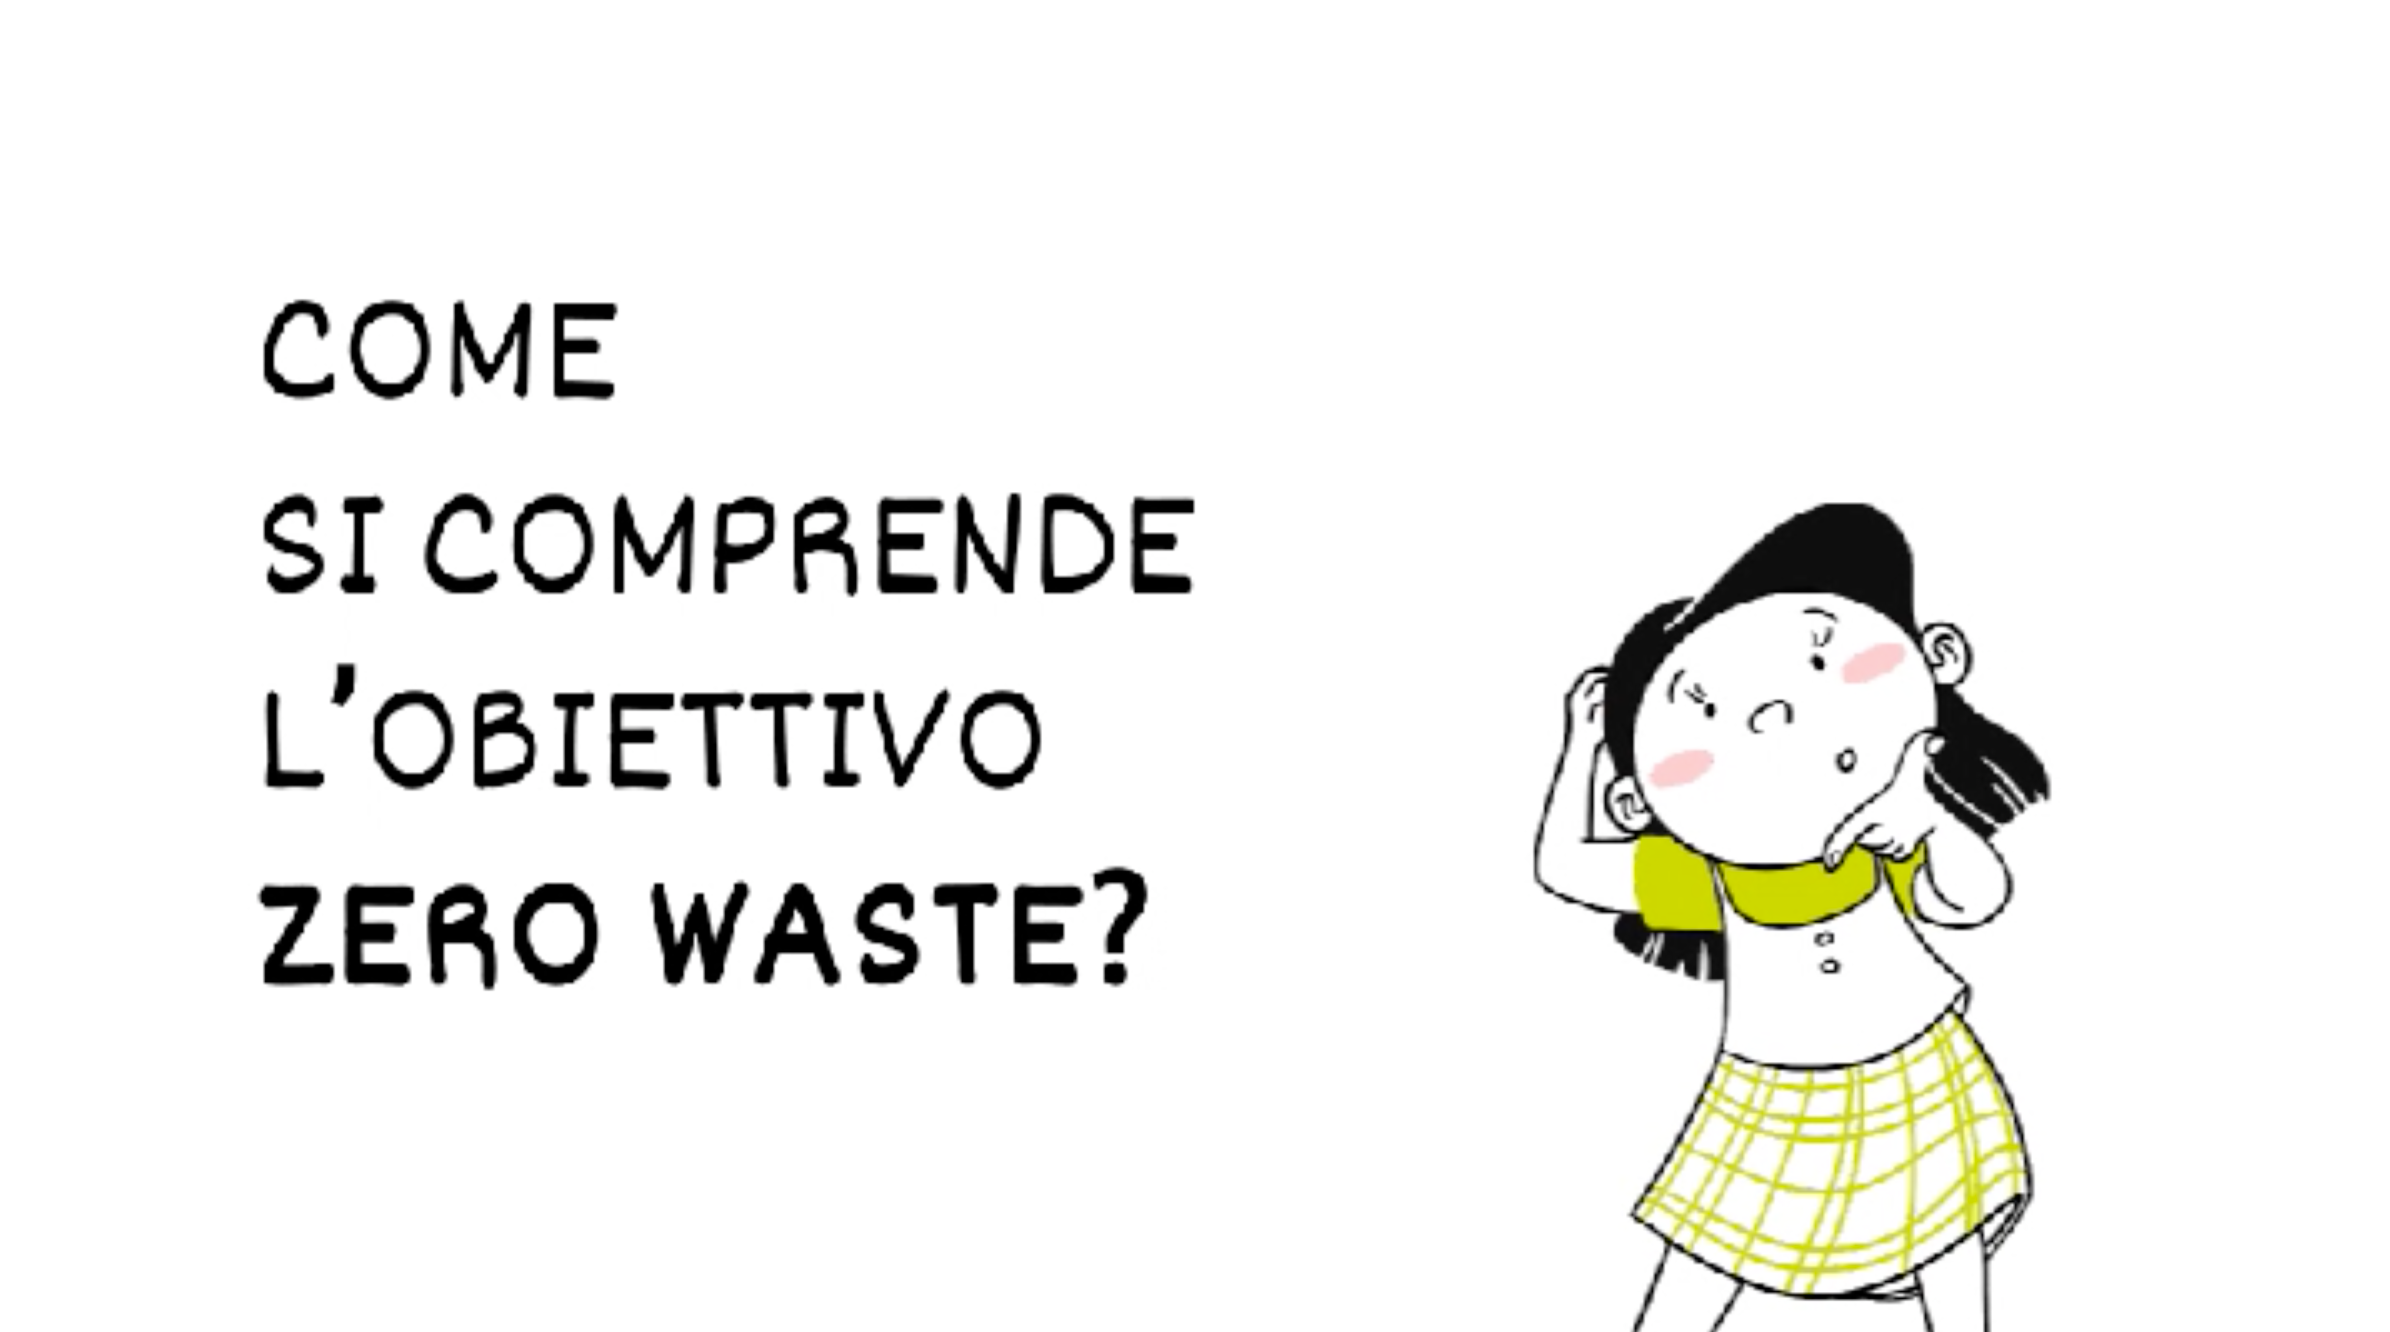 Obiettivo Zero Waste: come si comprende?